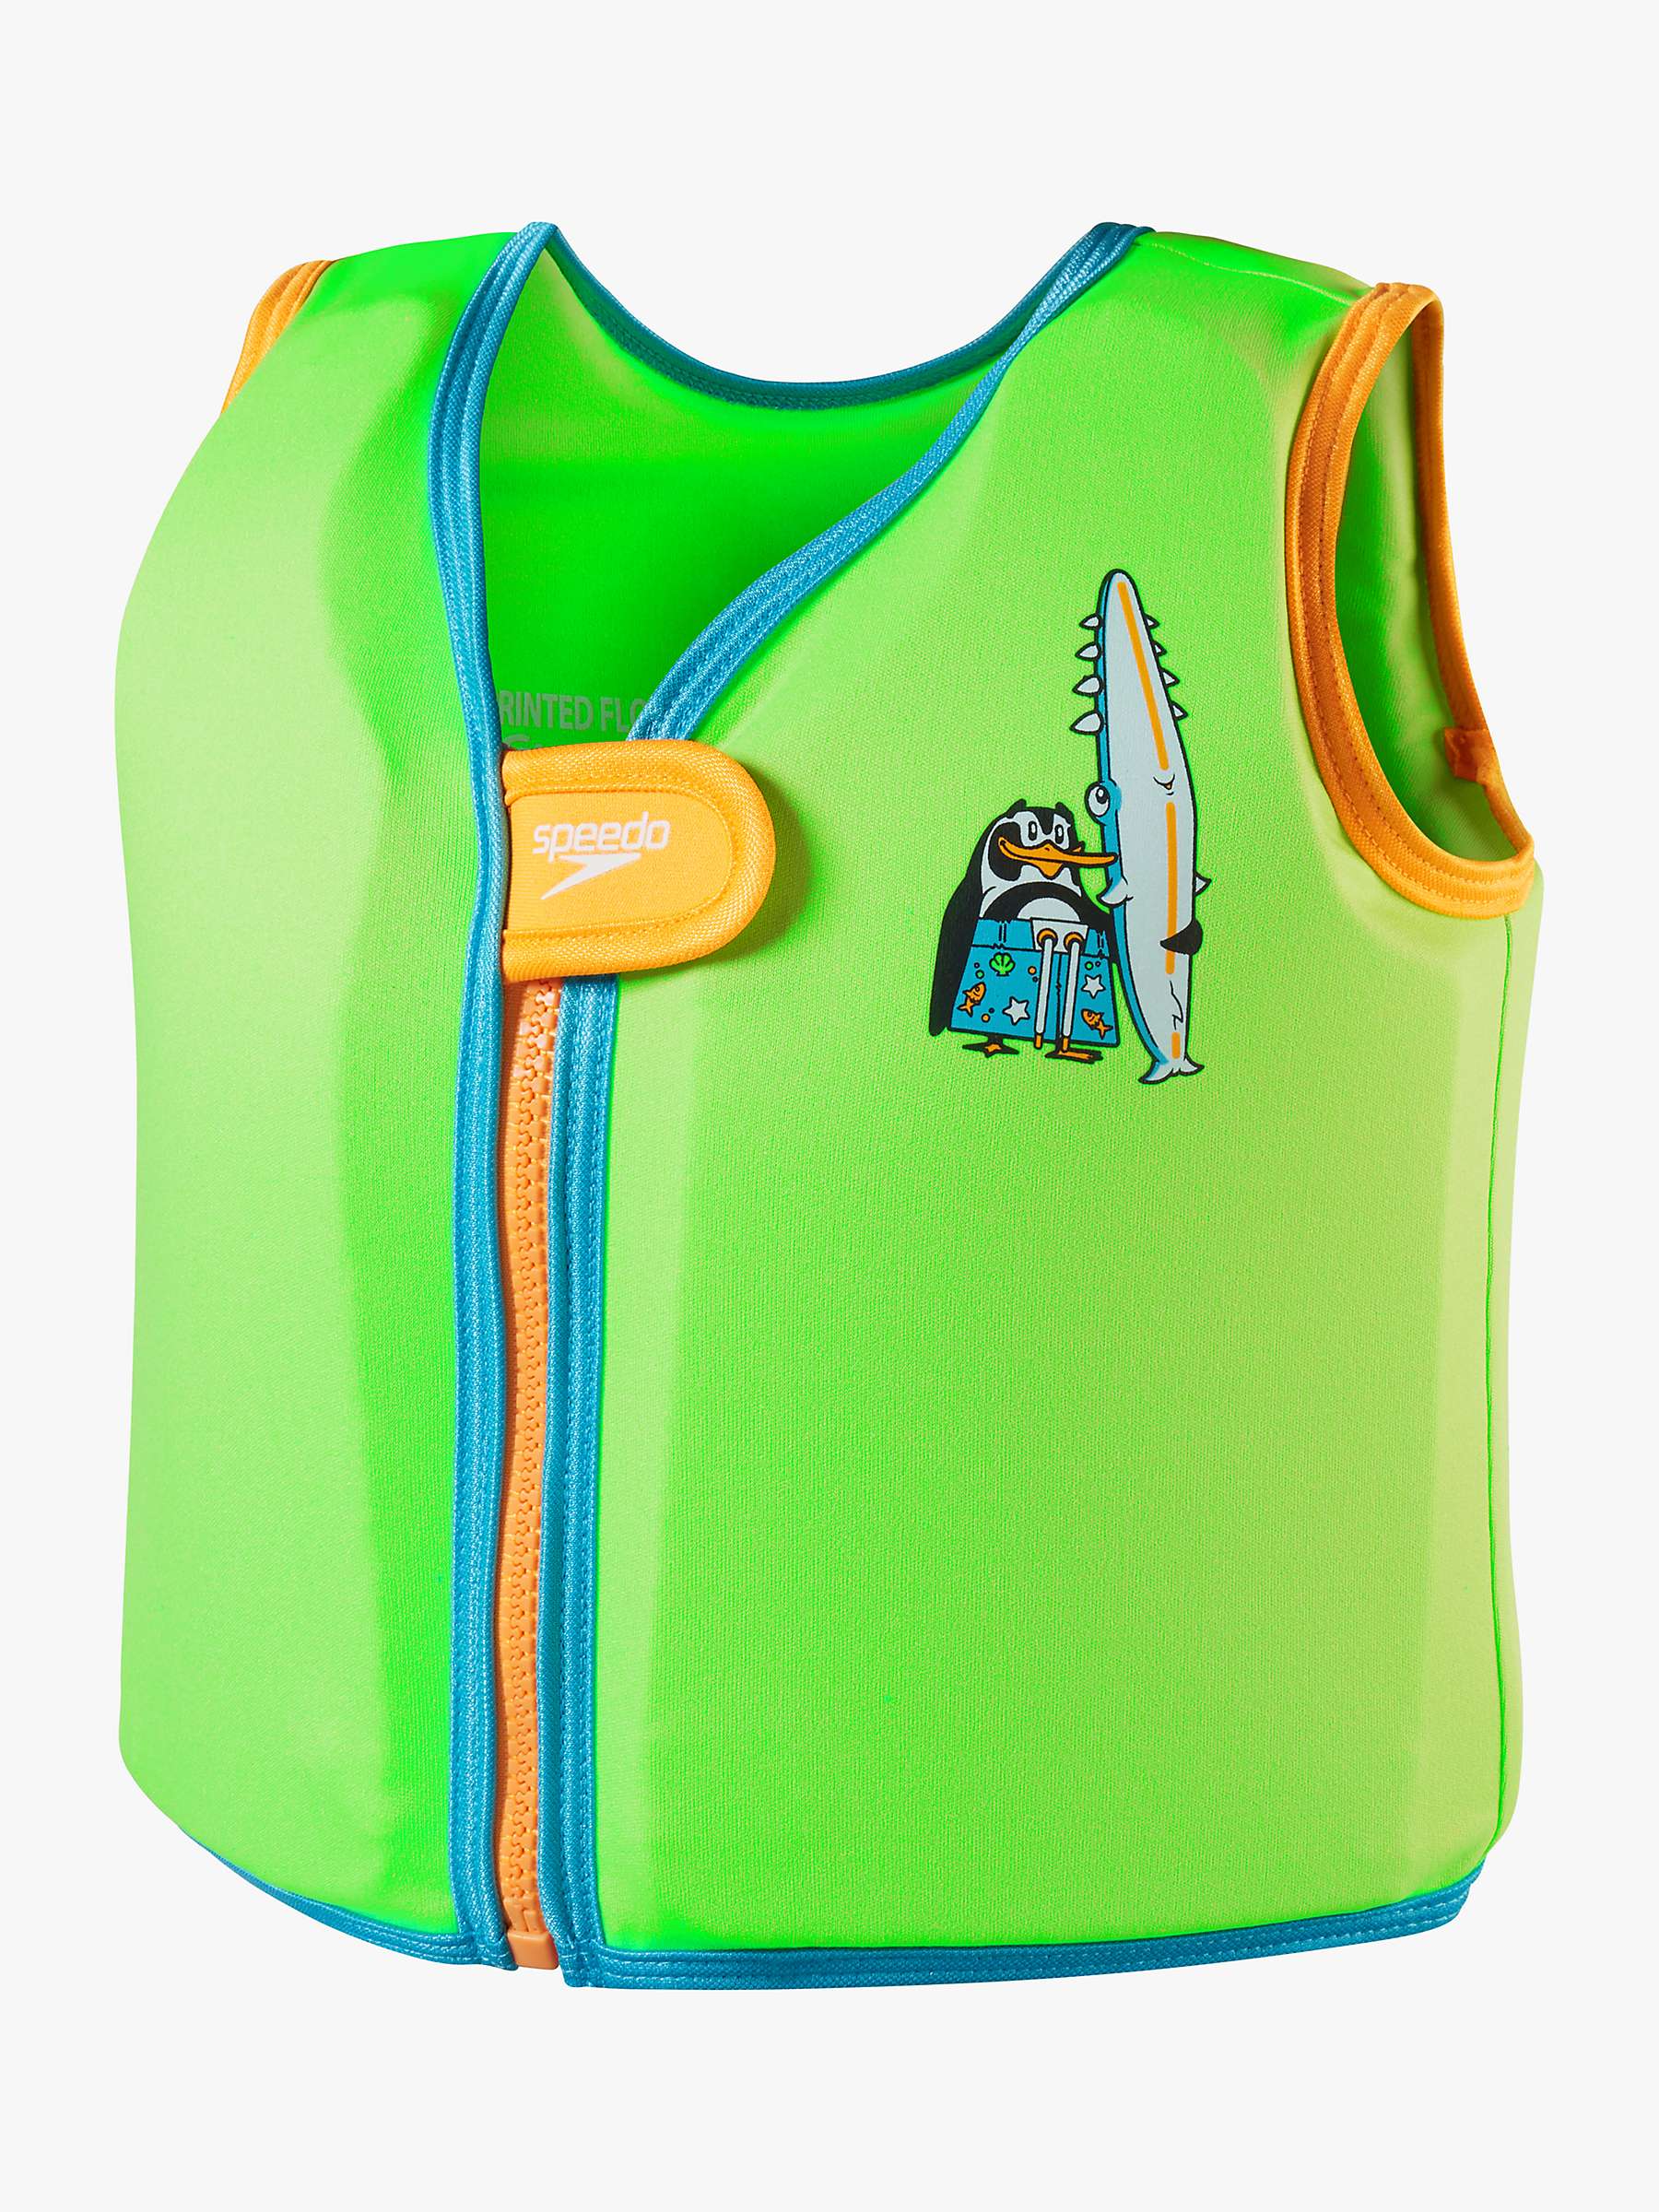 Buy Speedo Baby Penguin Float Vest, Azure Blue/Fluro Online at johnlewis.com